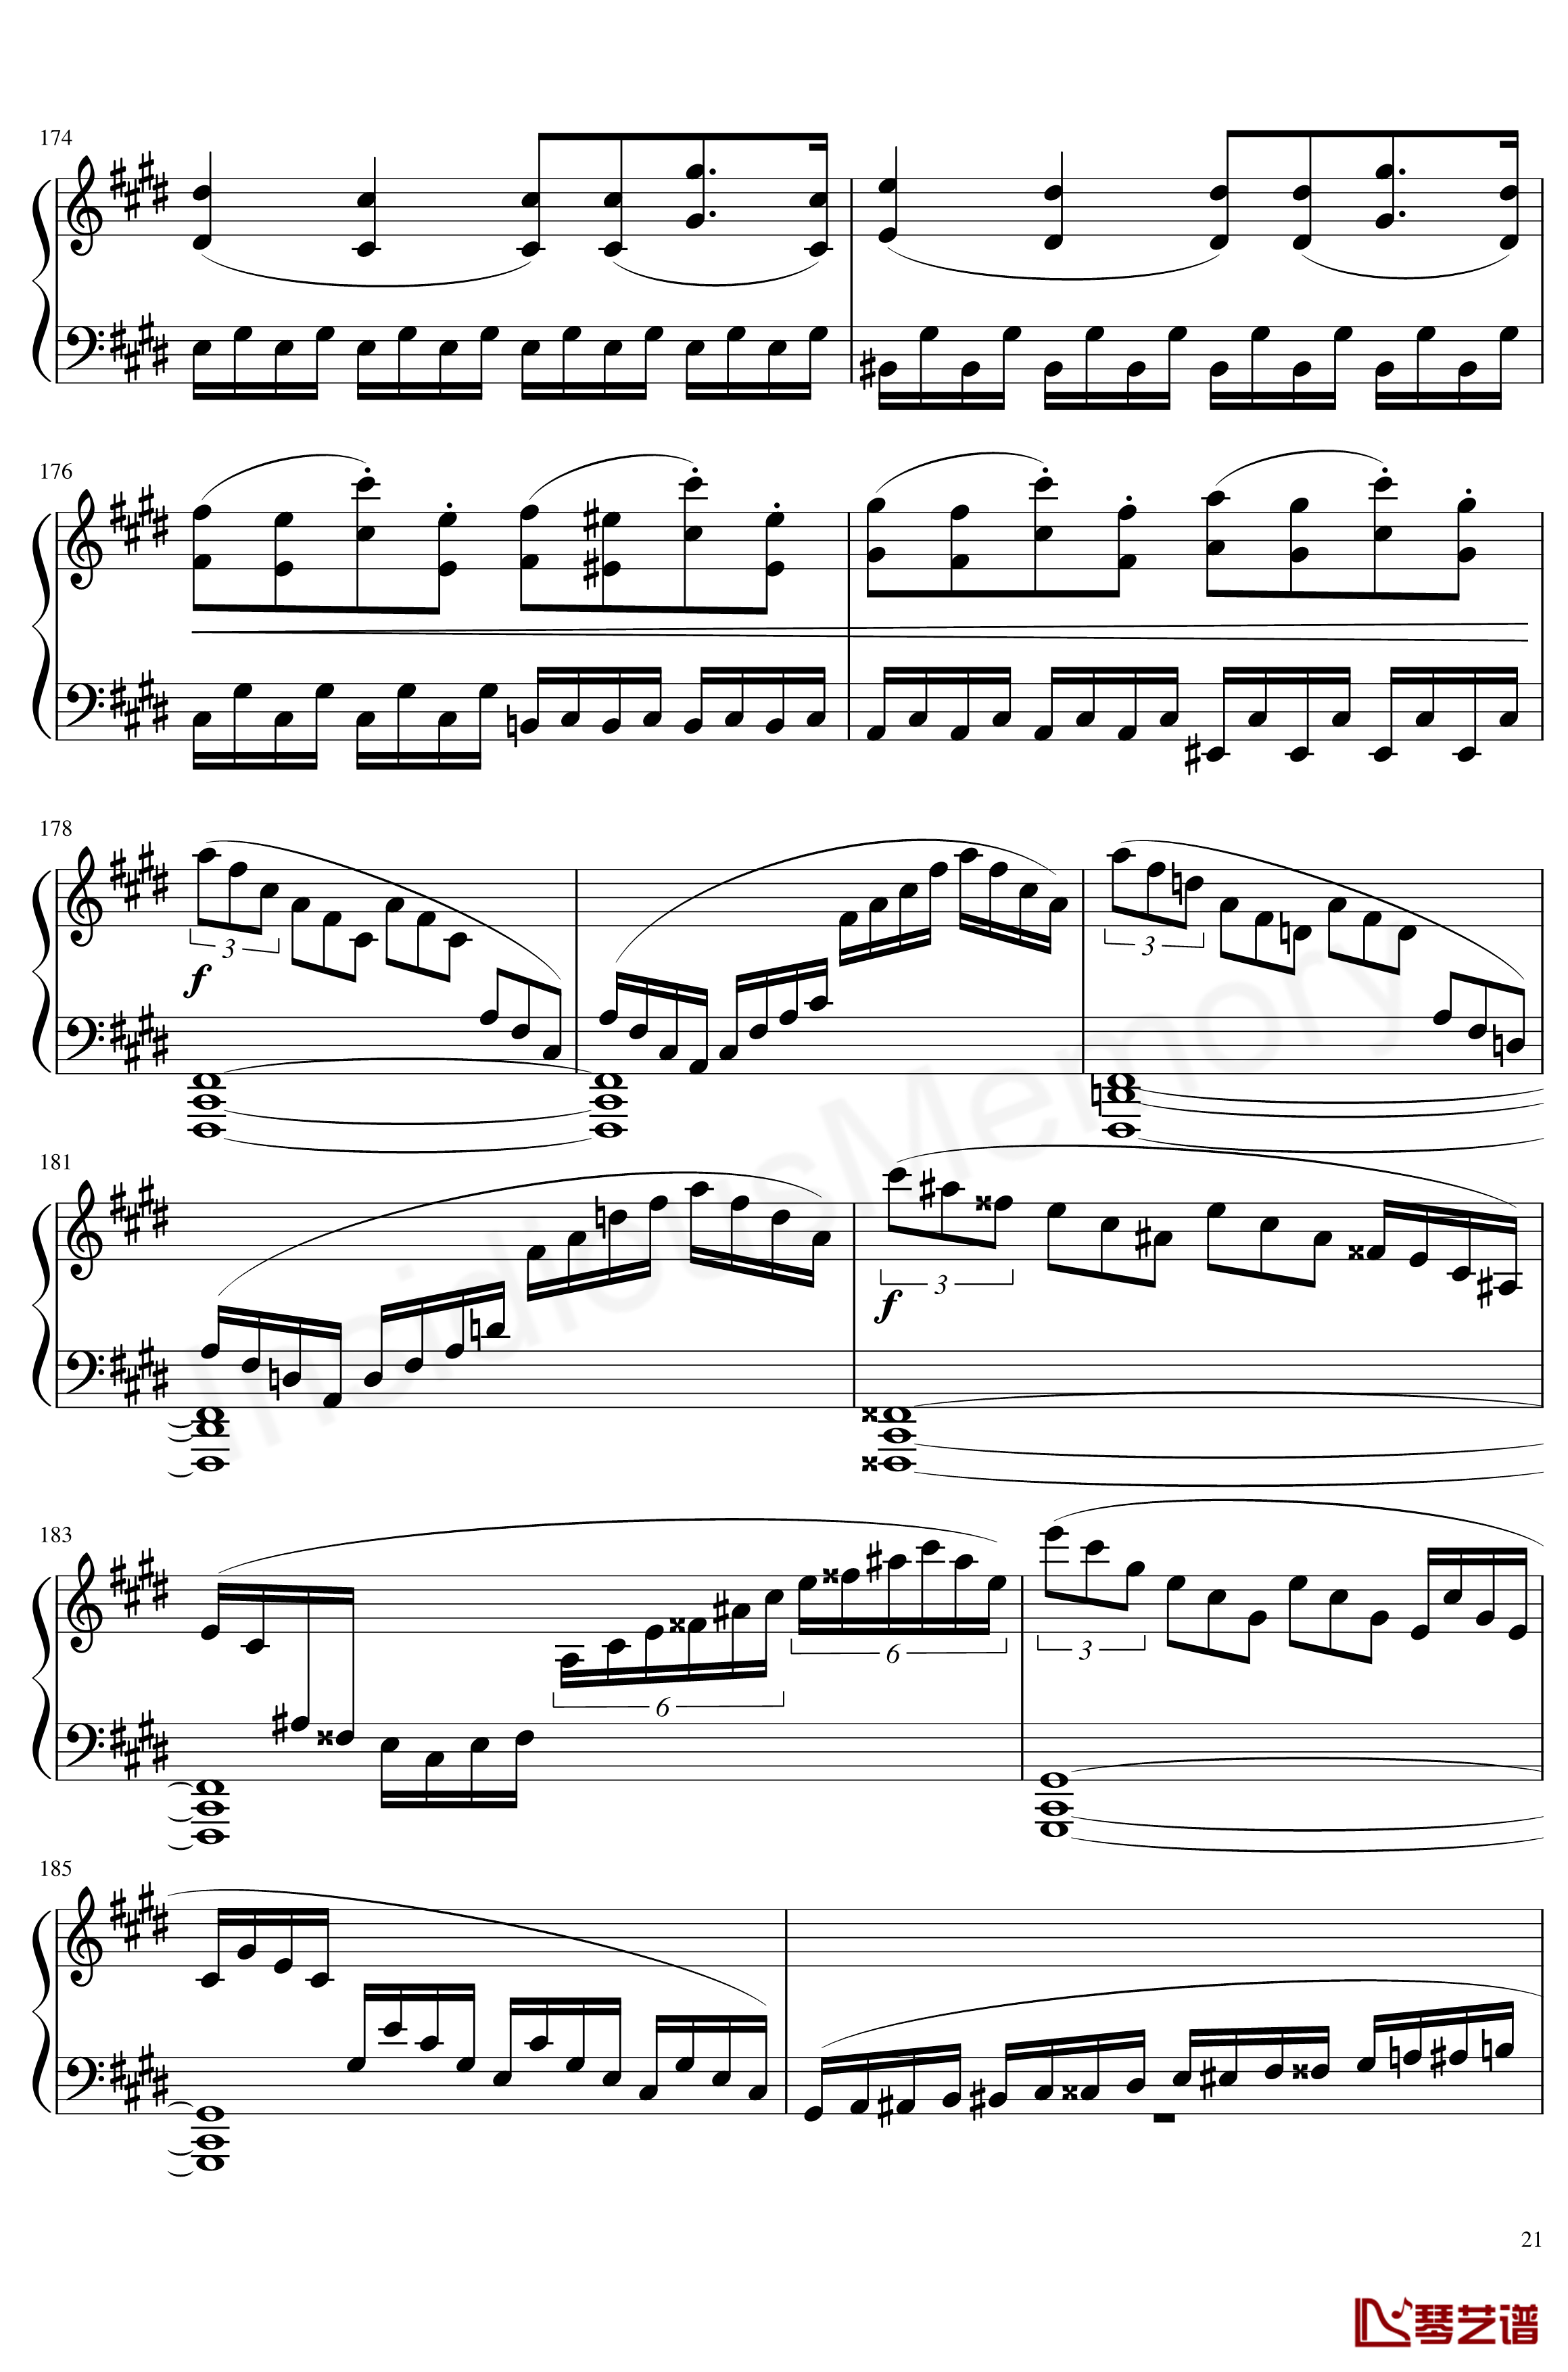 月光奏鸣曲钢琴谱-贝多芬-beethoven21